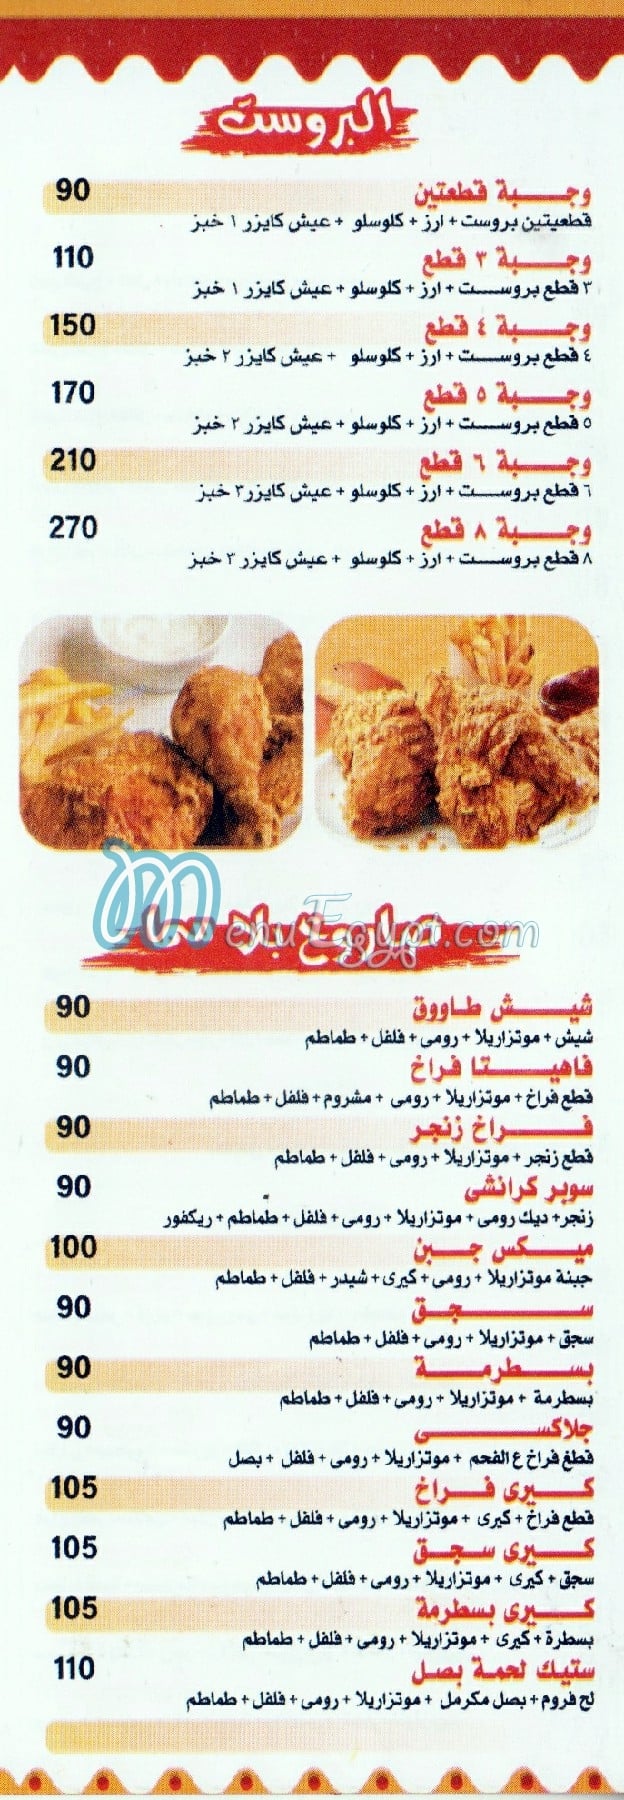 مطعم بيلا سما السوري مصر